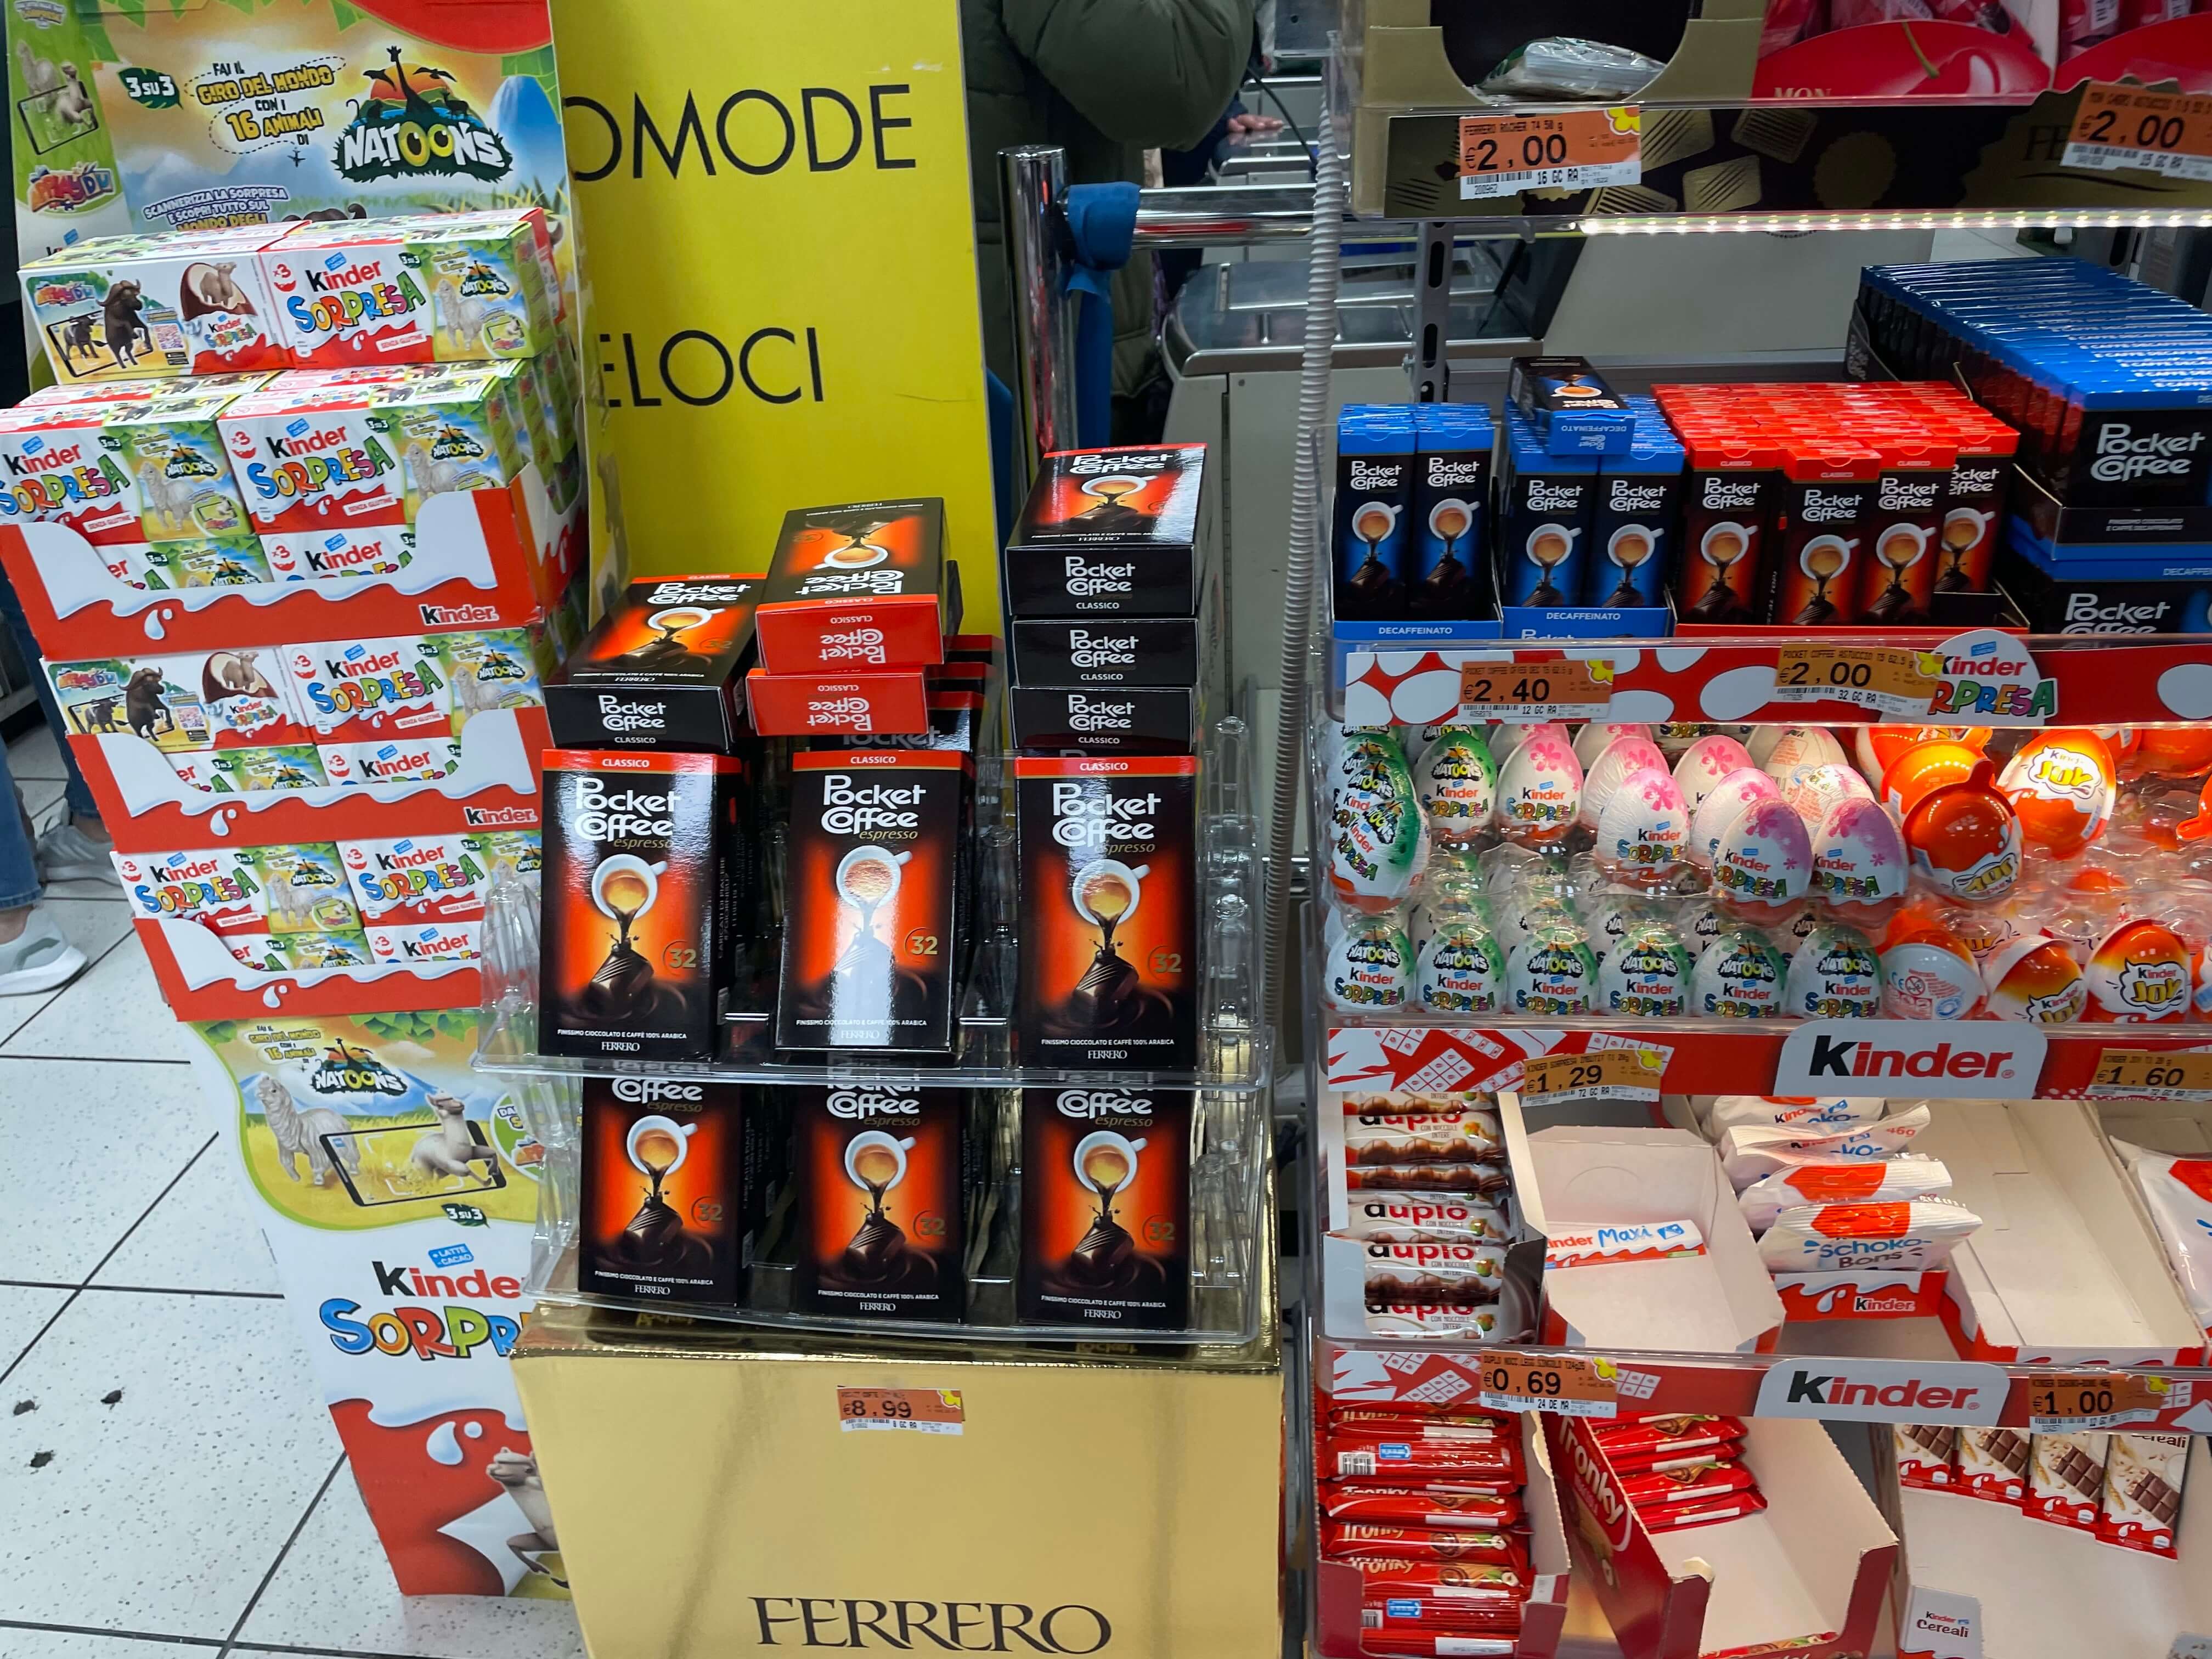 슈퍼마켓진열대모습. 여러 초콜릿들과 다른 스낵들이 진열대에 있는 모습. 오리지널 포켓커피 빨간색 박스가 진열대에 있는 모습.